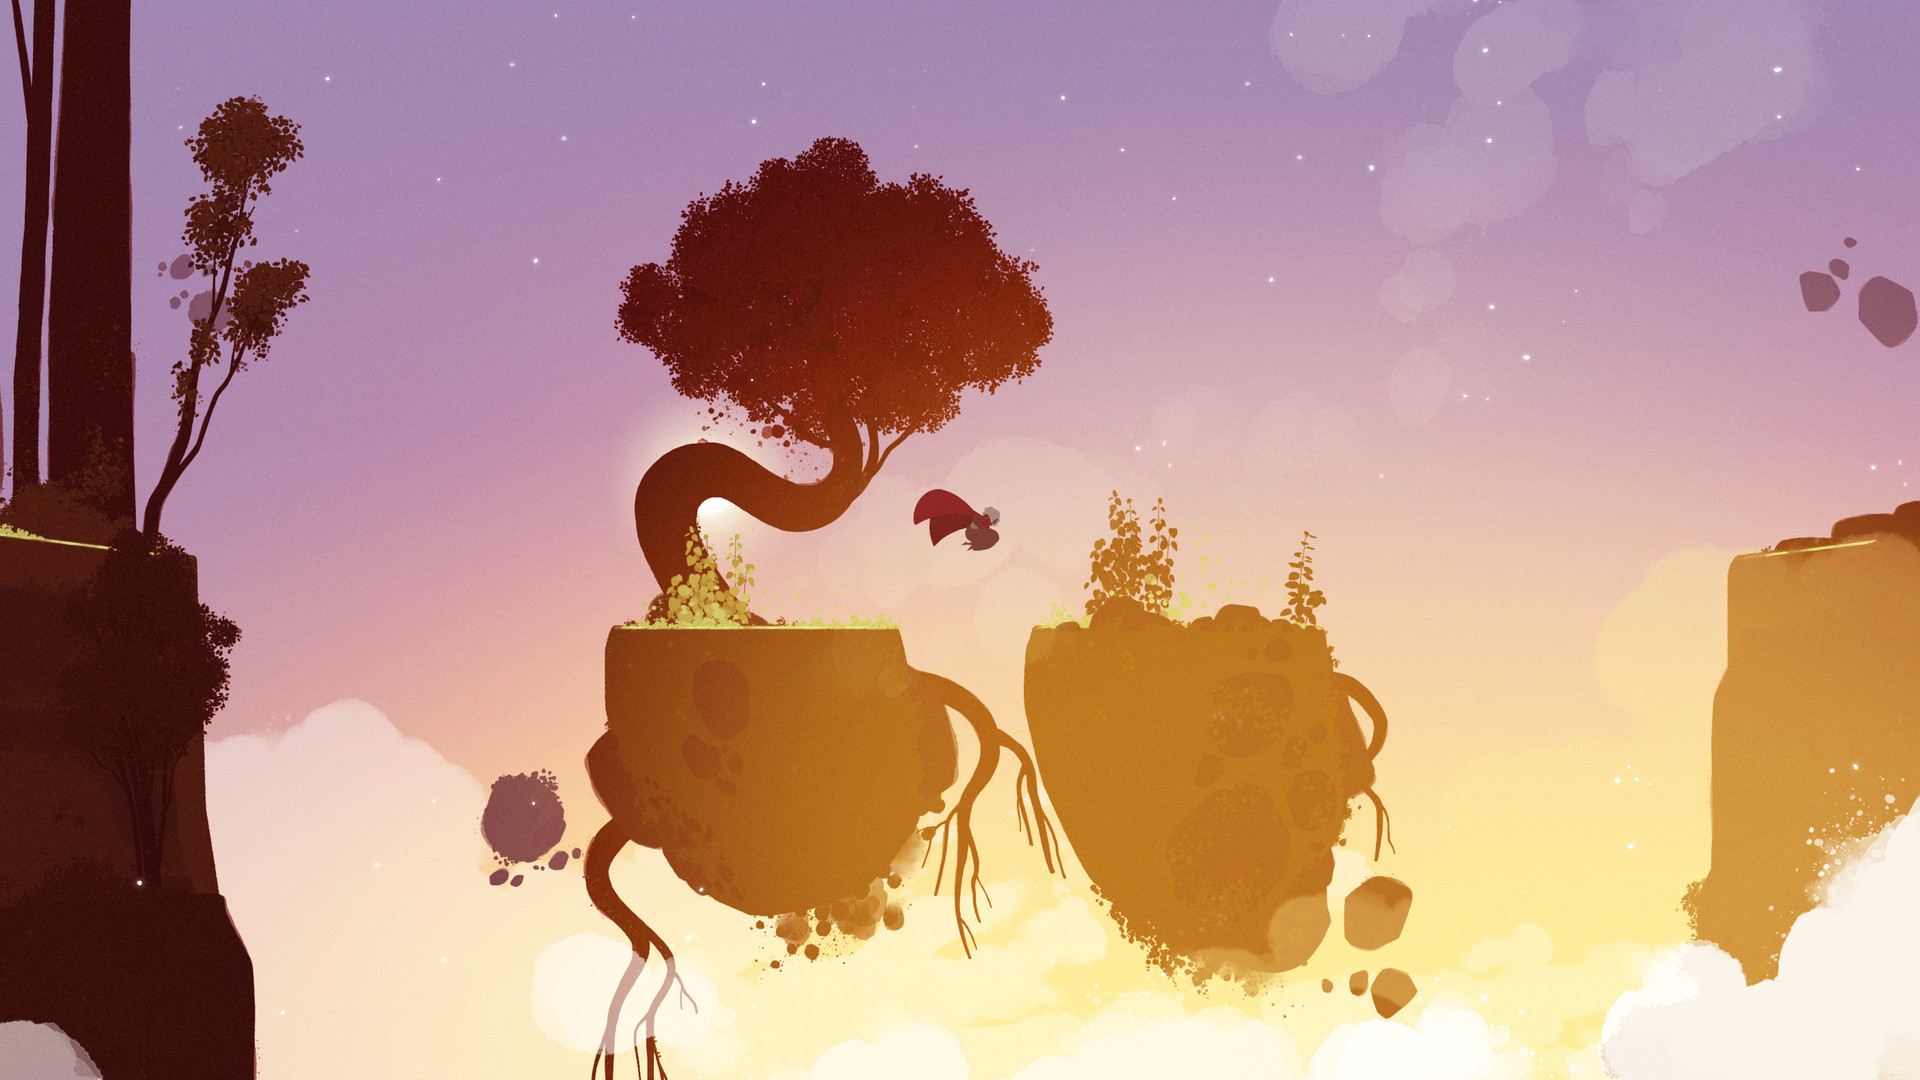 Un'immagine suggestiva di Neva, con un personaggio che salta di roccia in roccia fluttuanti, con un cielo dipinto di tonalità di rosa, viola e giallo.